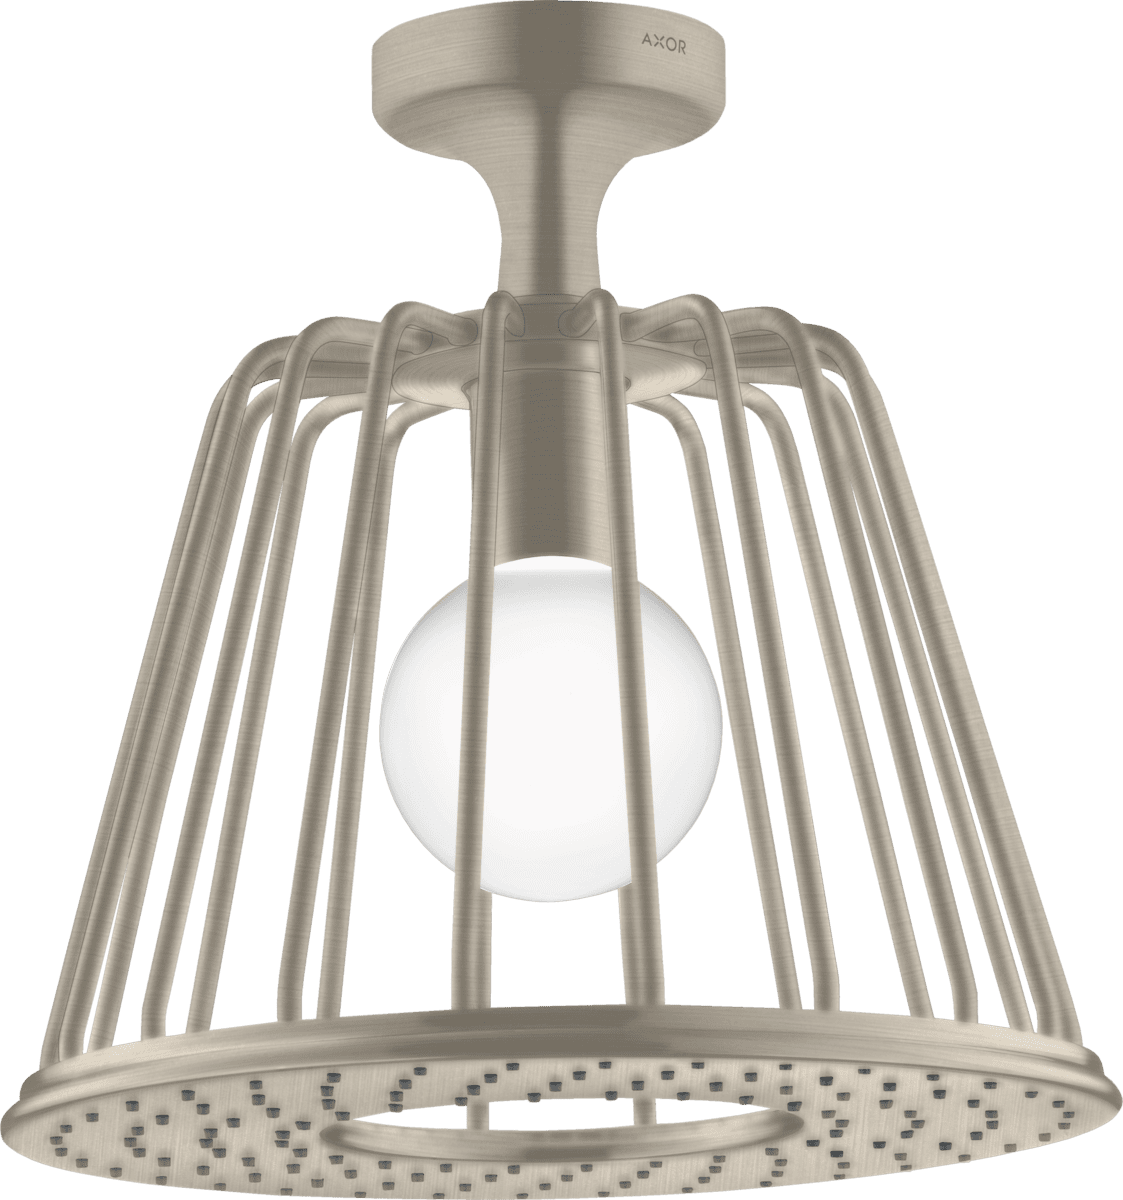 εικόνα του HANSGROHE AXOR LampShower/Nendo LampShower 275 1jet with ceiling connector #26032820 - Brushed Nickel